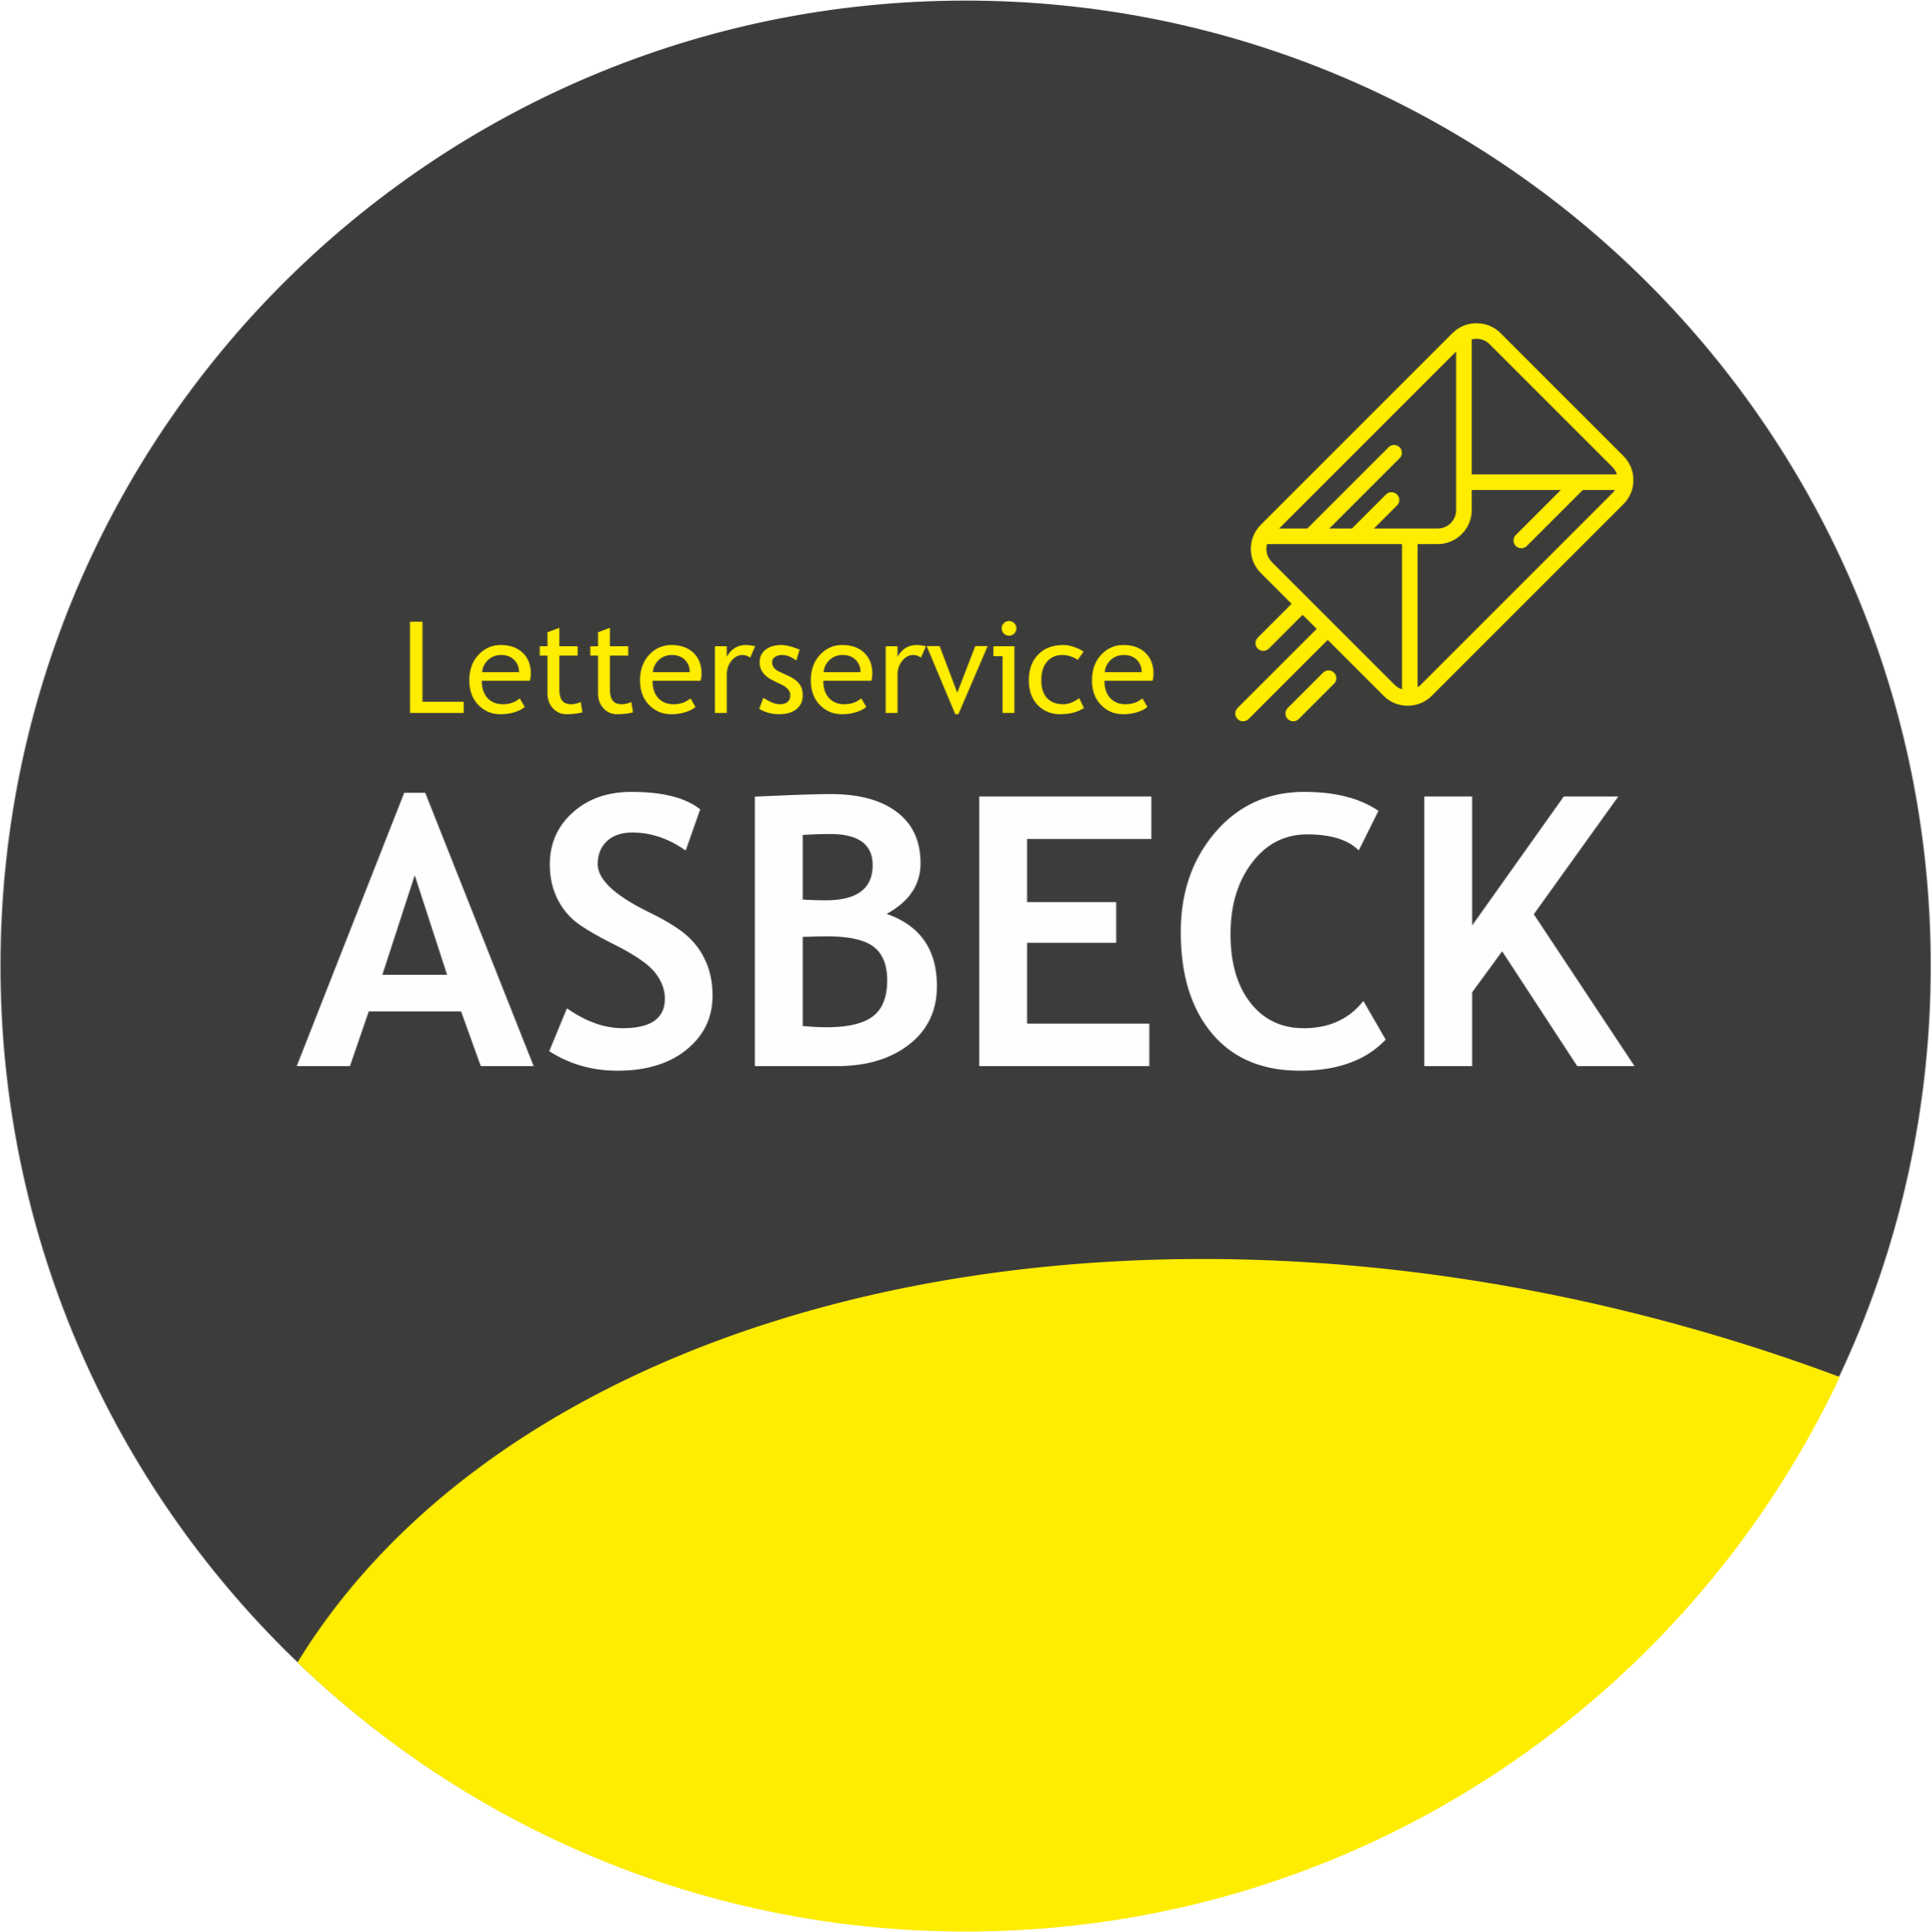 Letterservice Asbeck in Hagen in Westfalen - Logo